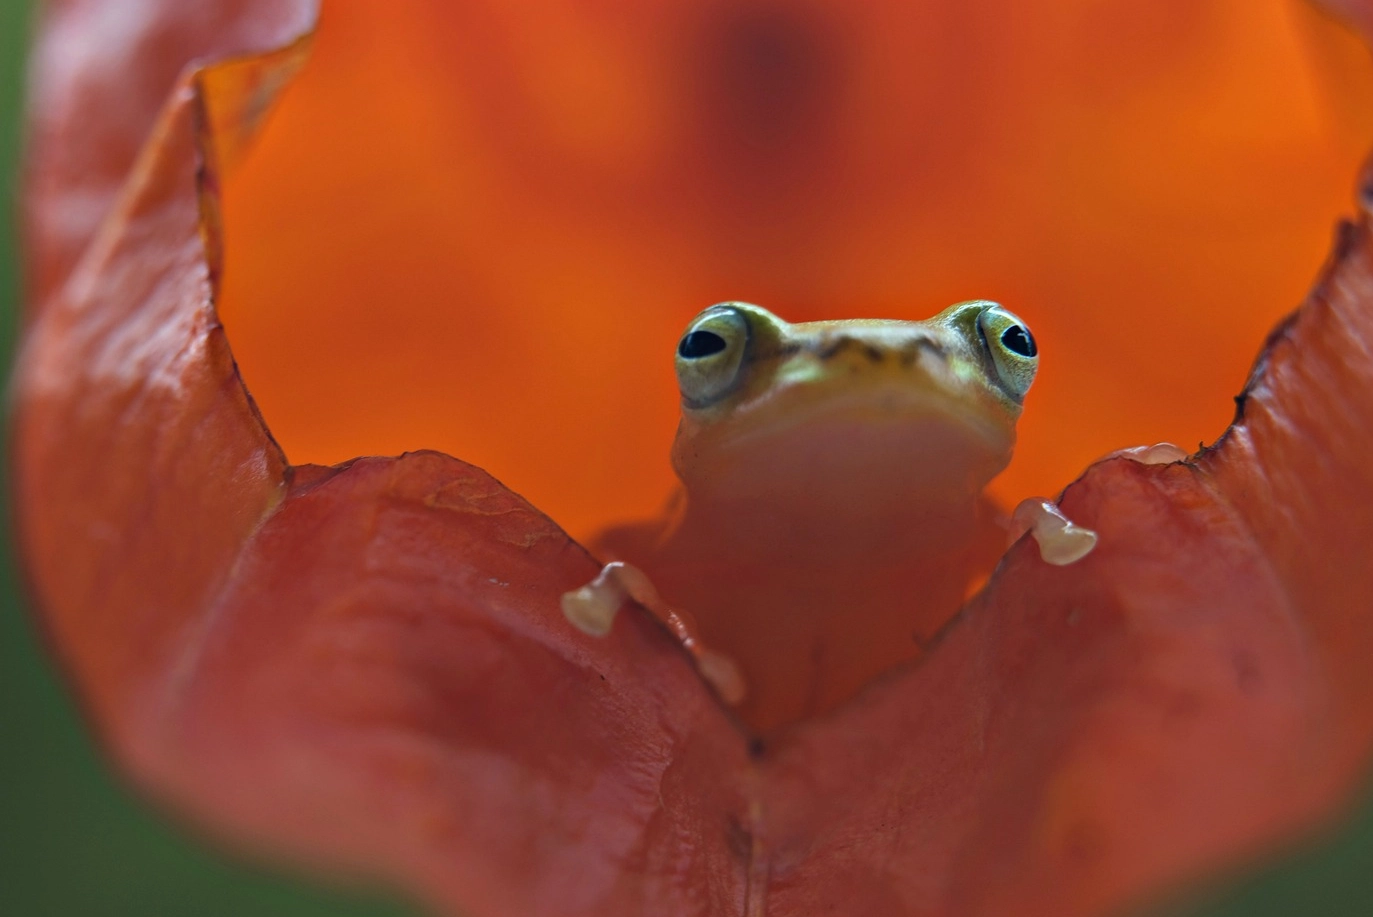 In questa splendida immagine una rana dorata sembra aver trovato casa in un fiore